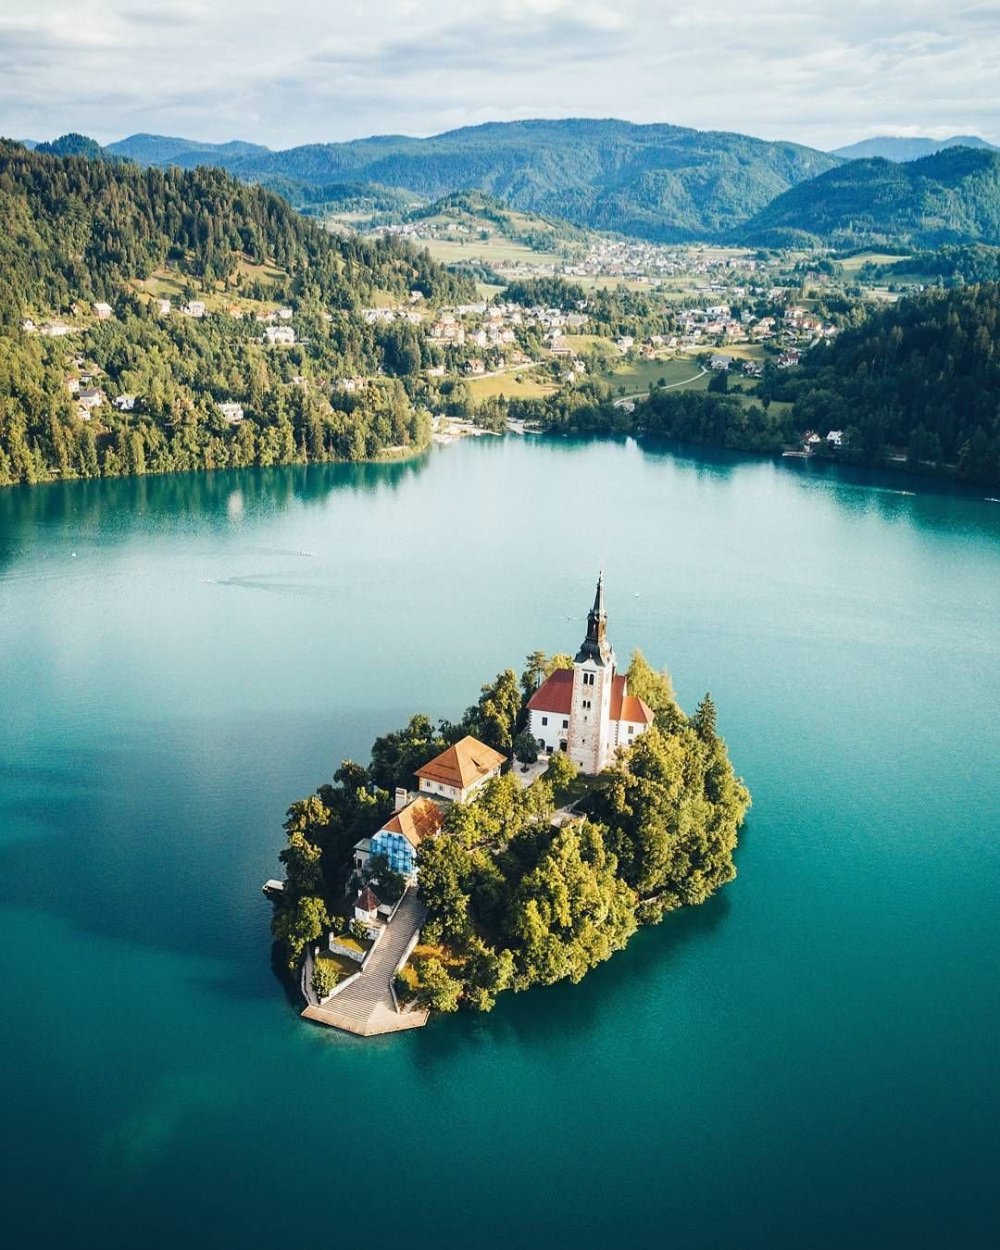 Бледское озеро Словения панорама